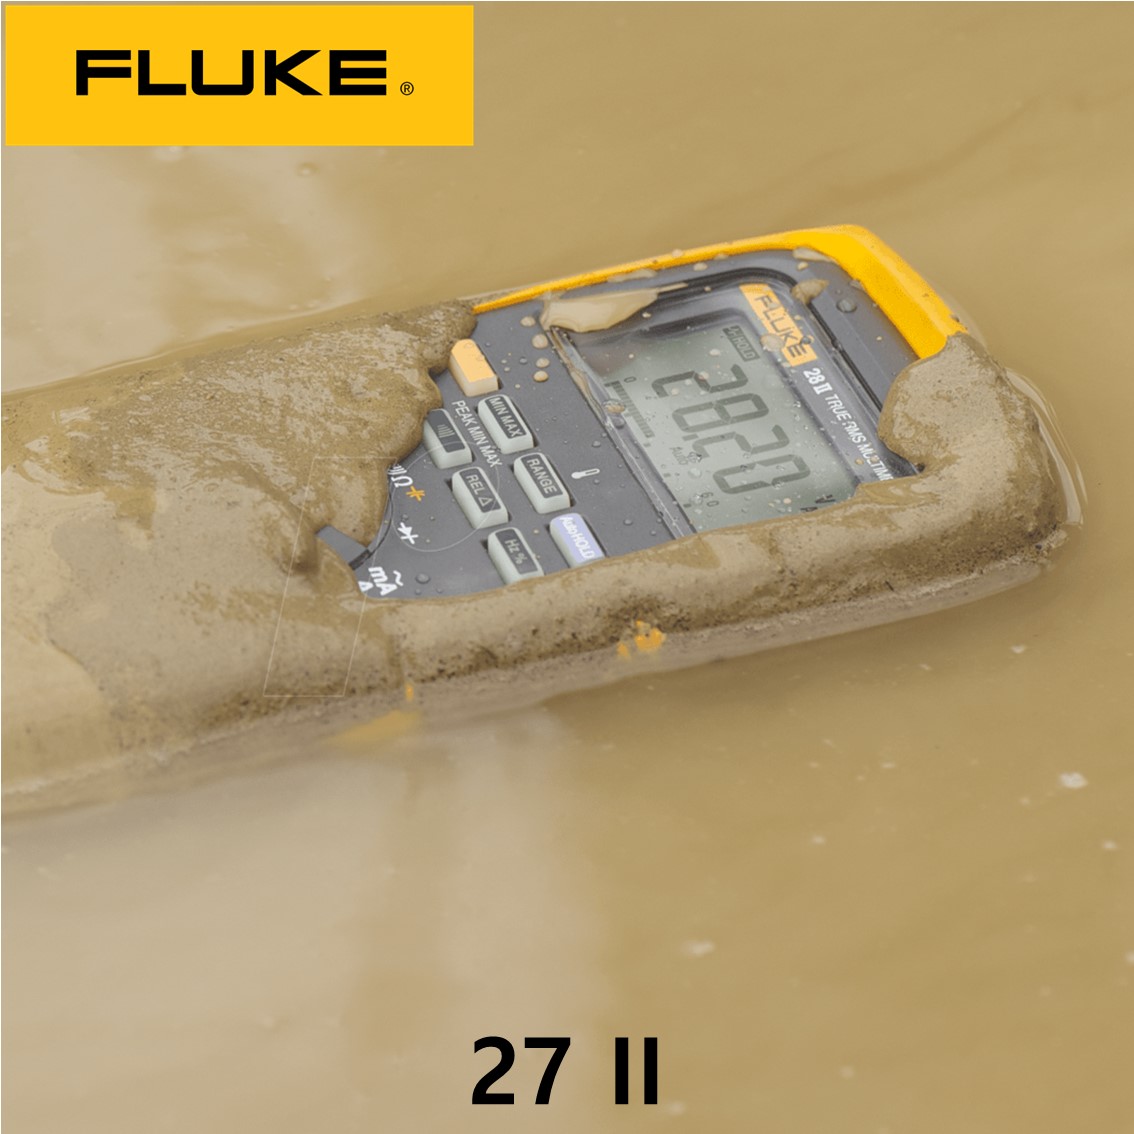 [ Fluke 27II ] 정품 플루크 디지털 멀티미터 27II, 27 II  플루크272